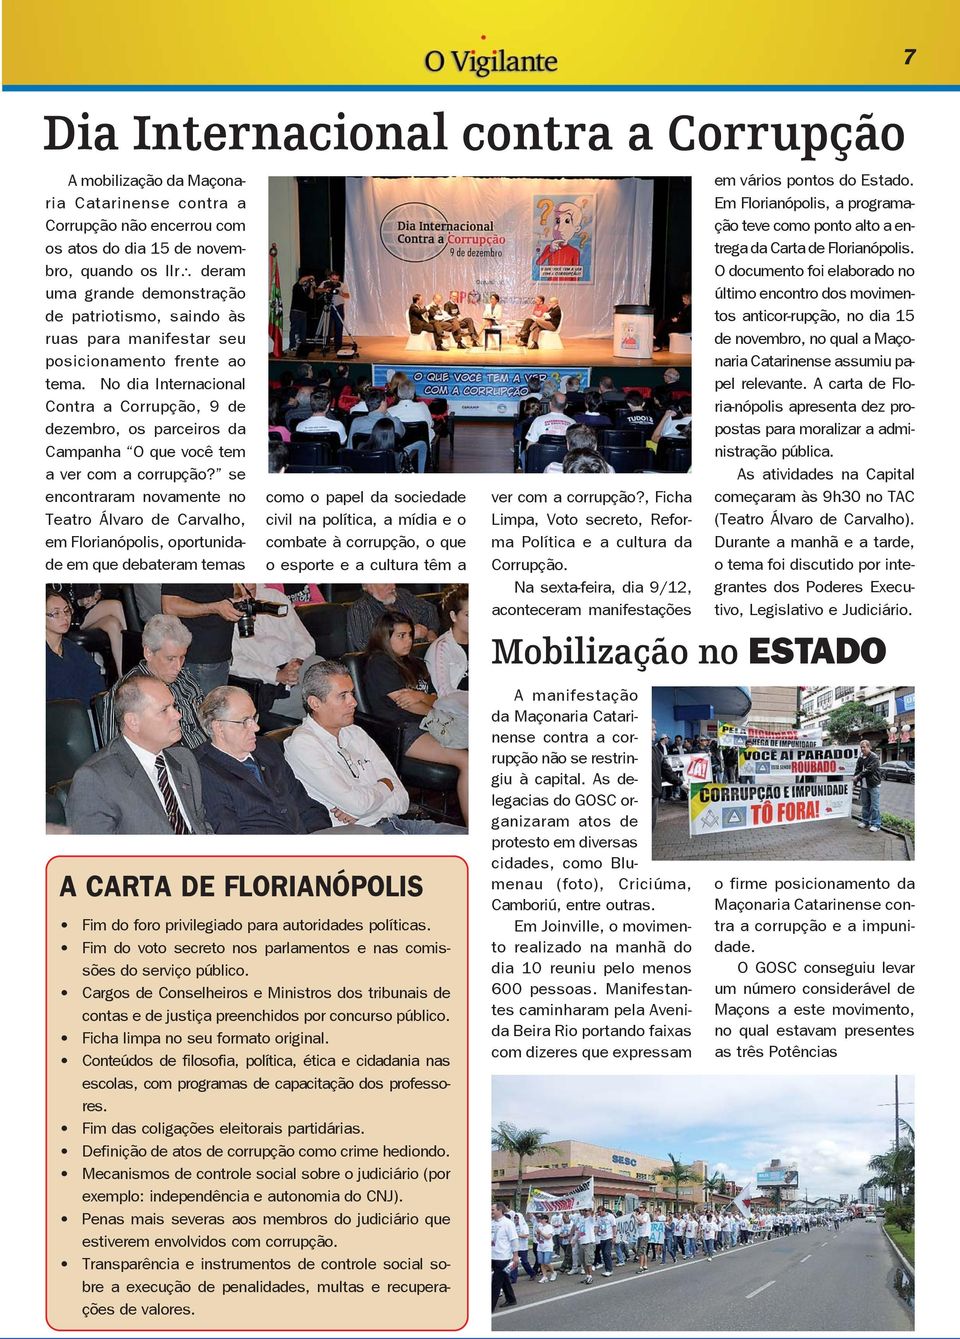 se encontraram novamente no Teatro Álvaro de Carvalho, em Florianópolis, oportunidade em que debateram temas como o papel da sociedade civil na política, a mídia e o combate à corrupção, o que o